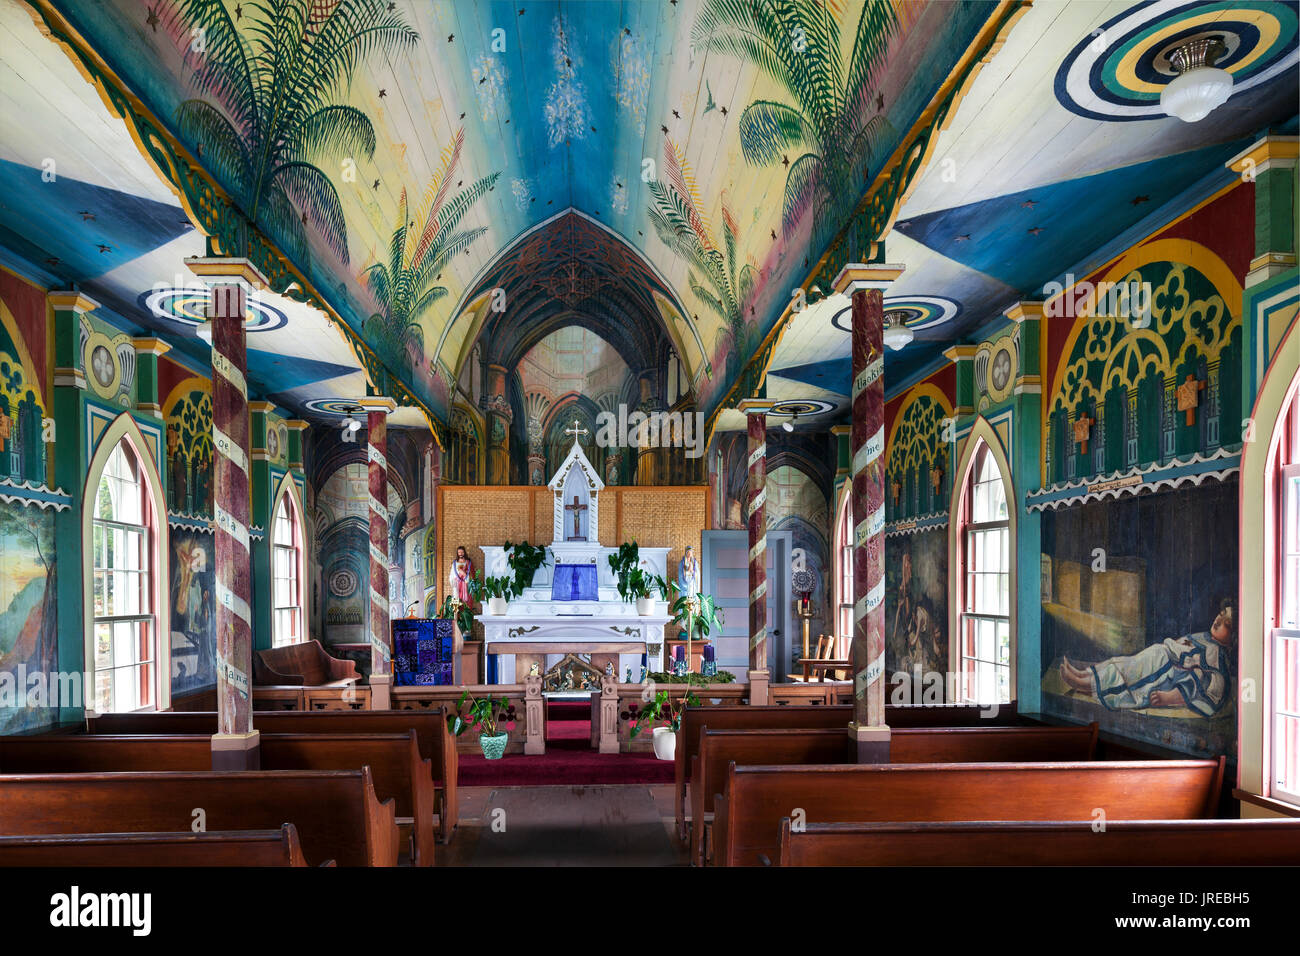 HI00464-00....Hawai'i - Saint Benoît dans l'Église Catholique Romaine Honaunau. Connu sous le nom de l'église peinte. La première église peinte à Hawai'i. Banque D'Images